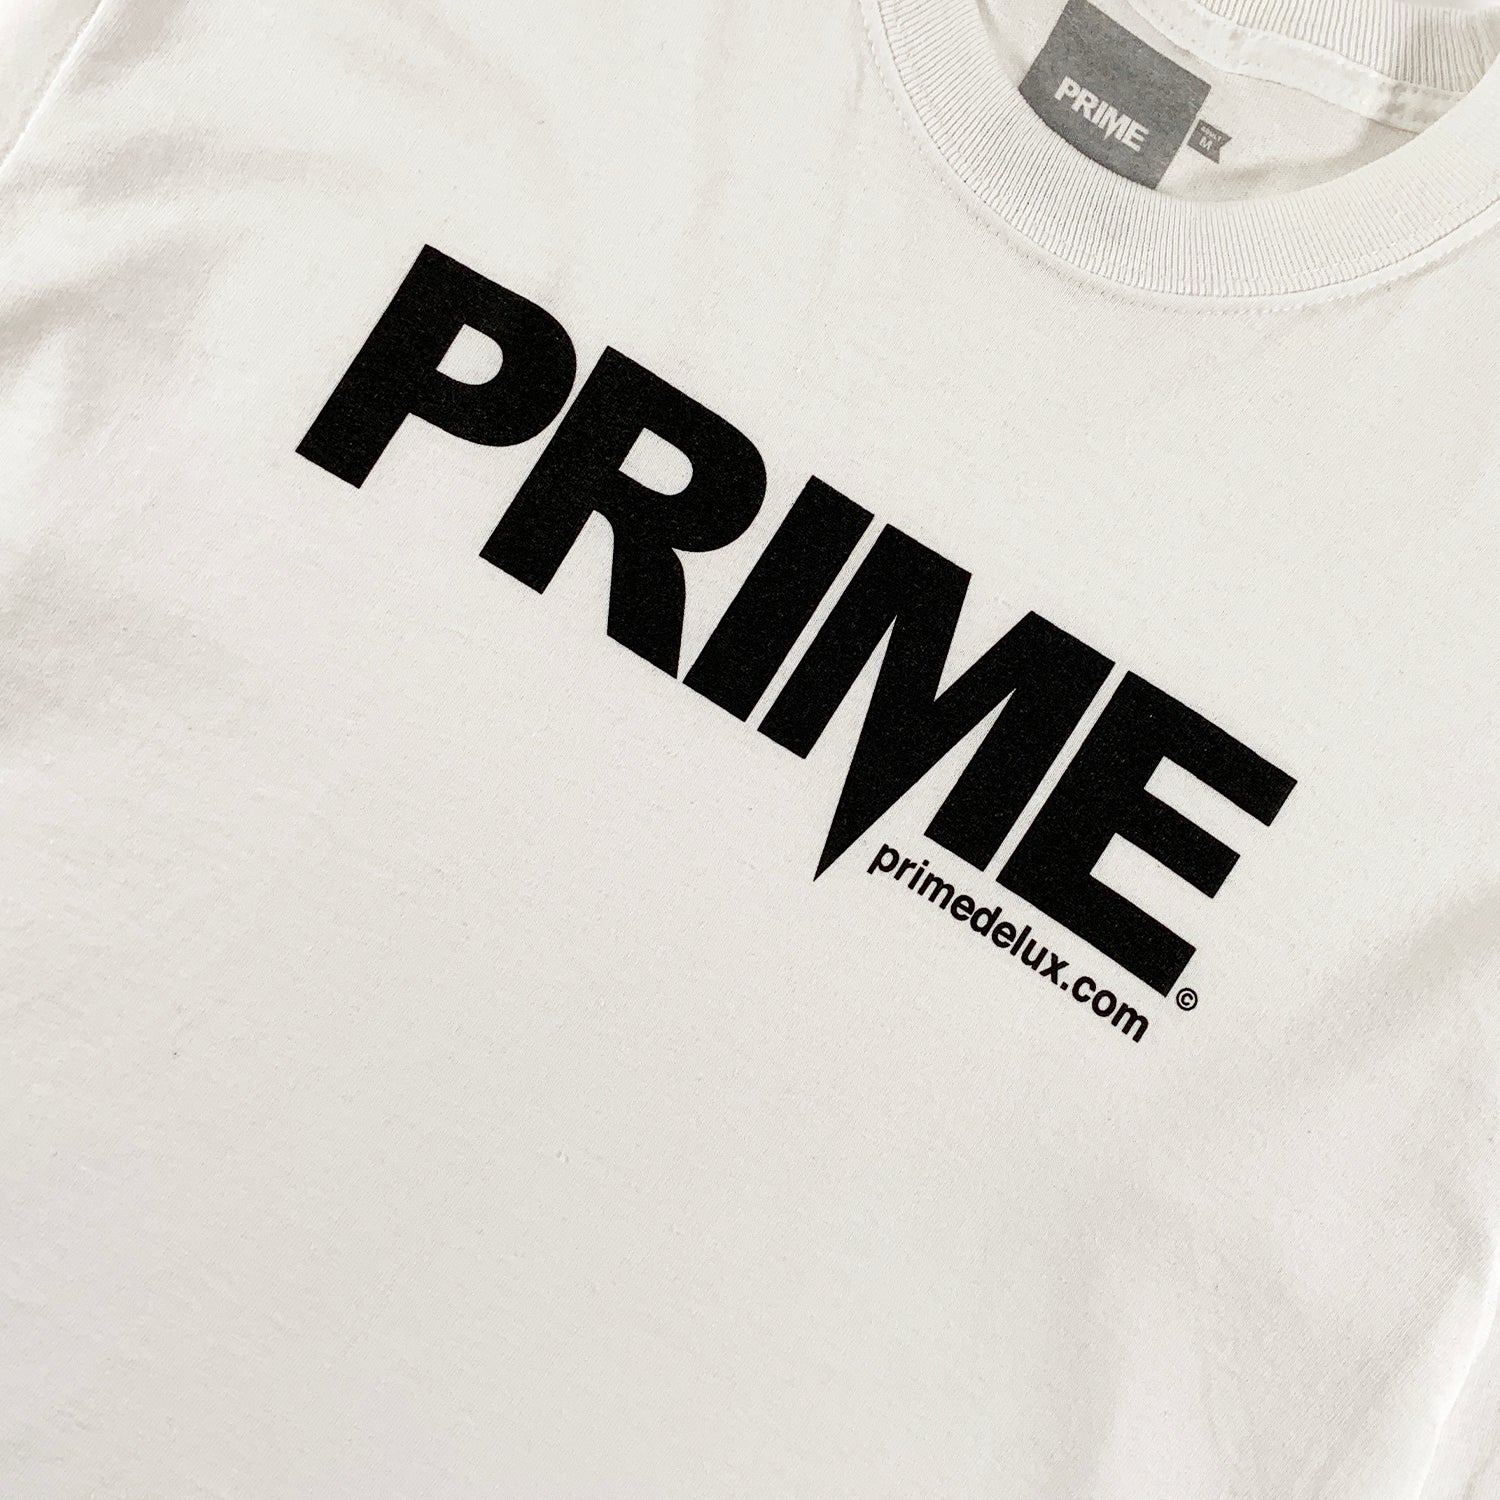 PRIME DELUX OG PREMIUM LONG SLEEVE T-SHIRT - WHITE / BLACK - Prime Delux Store